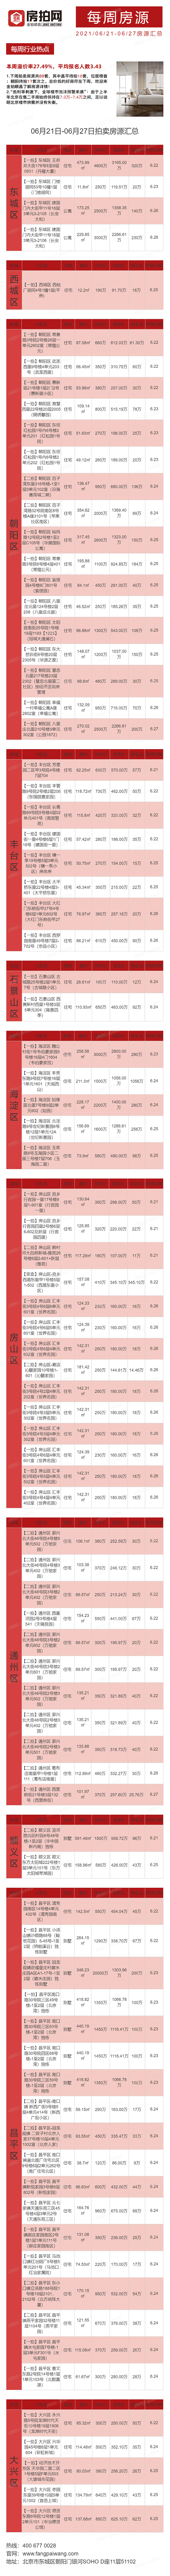 北京6月21日-6月27日法拍房源列表